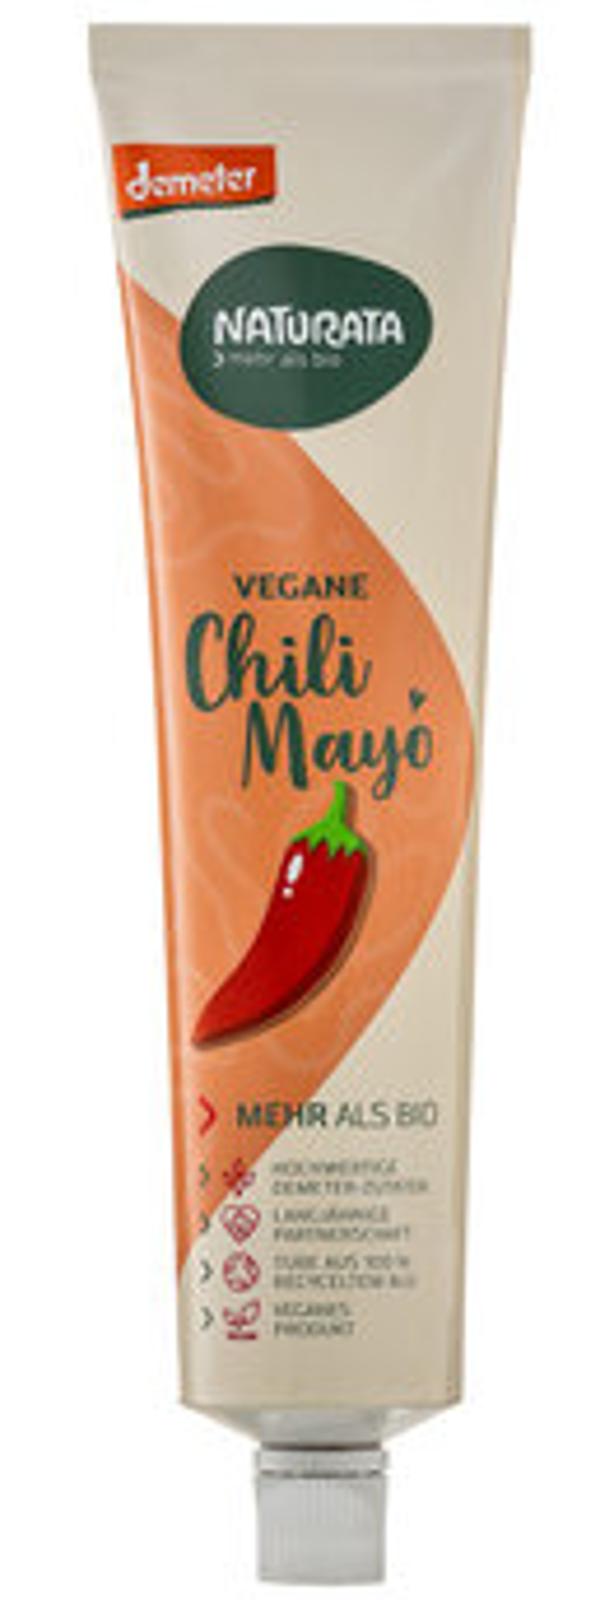 Produktfoto zu Vegane Chili Mayo, 185 ml - 40% reduziert, MHD 17.04.2024